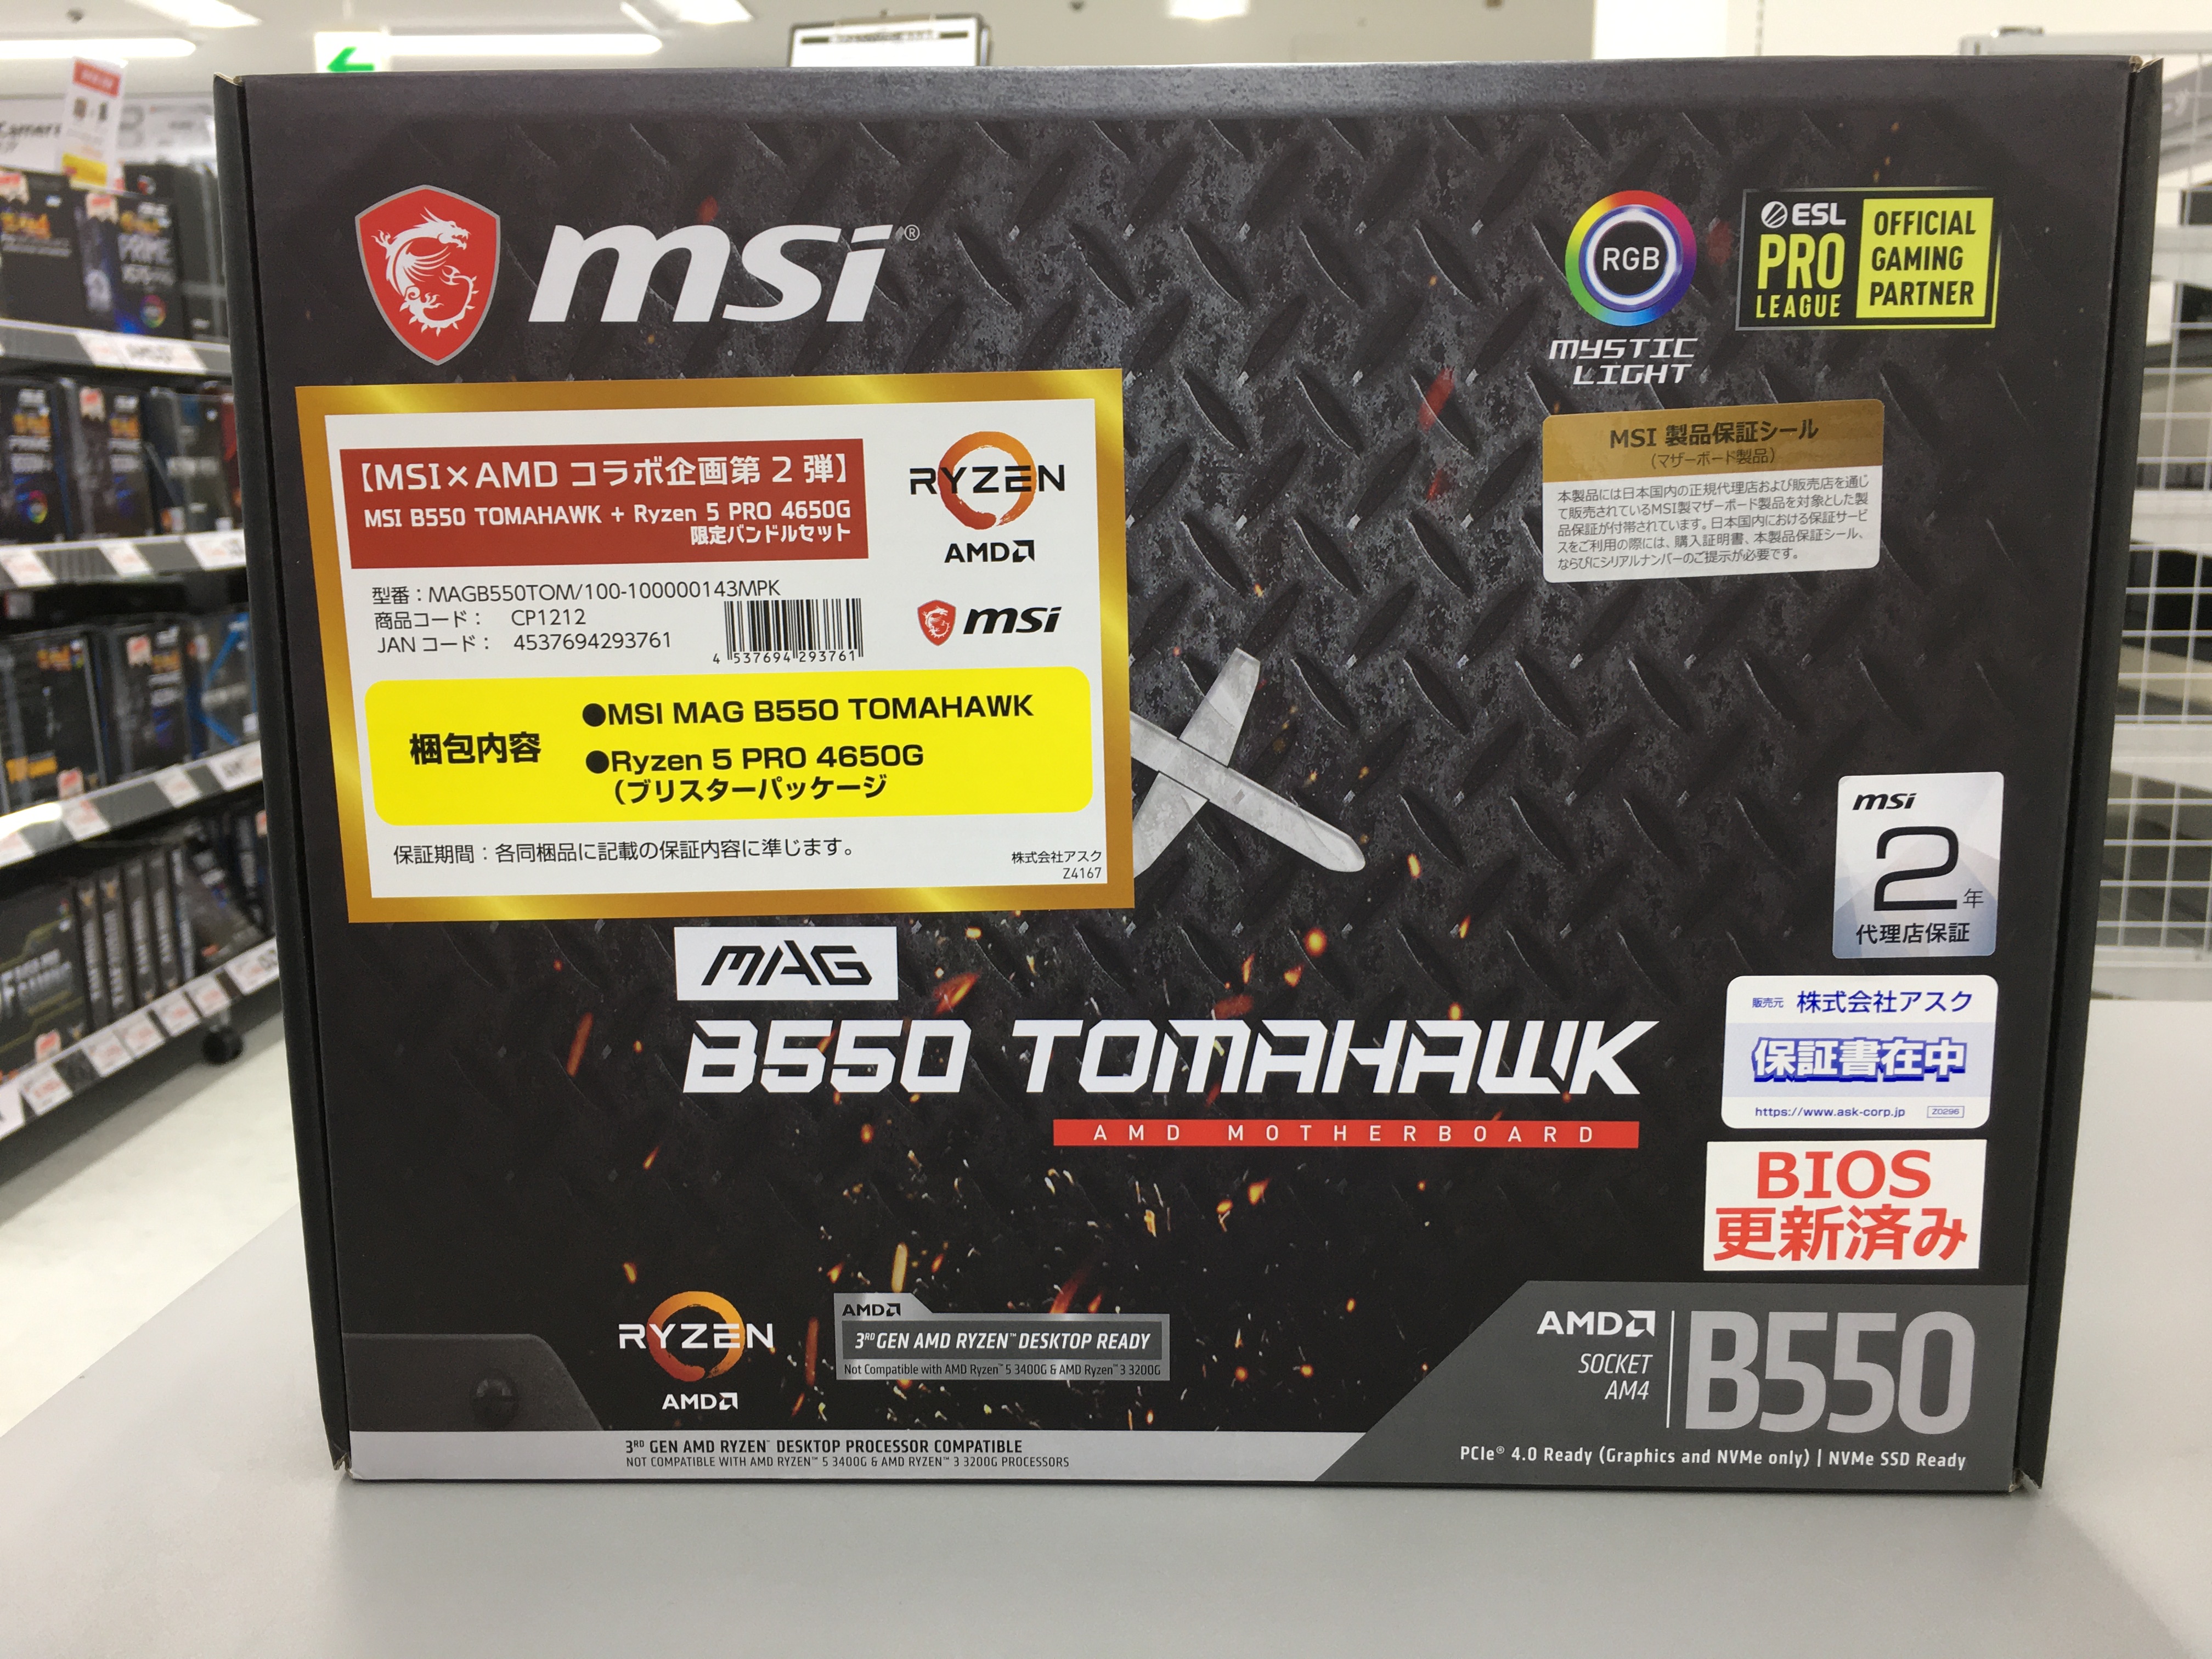 MSI B550 TOMAHAWK + Ryzen 7 PRO 4750G - PCパーツ